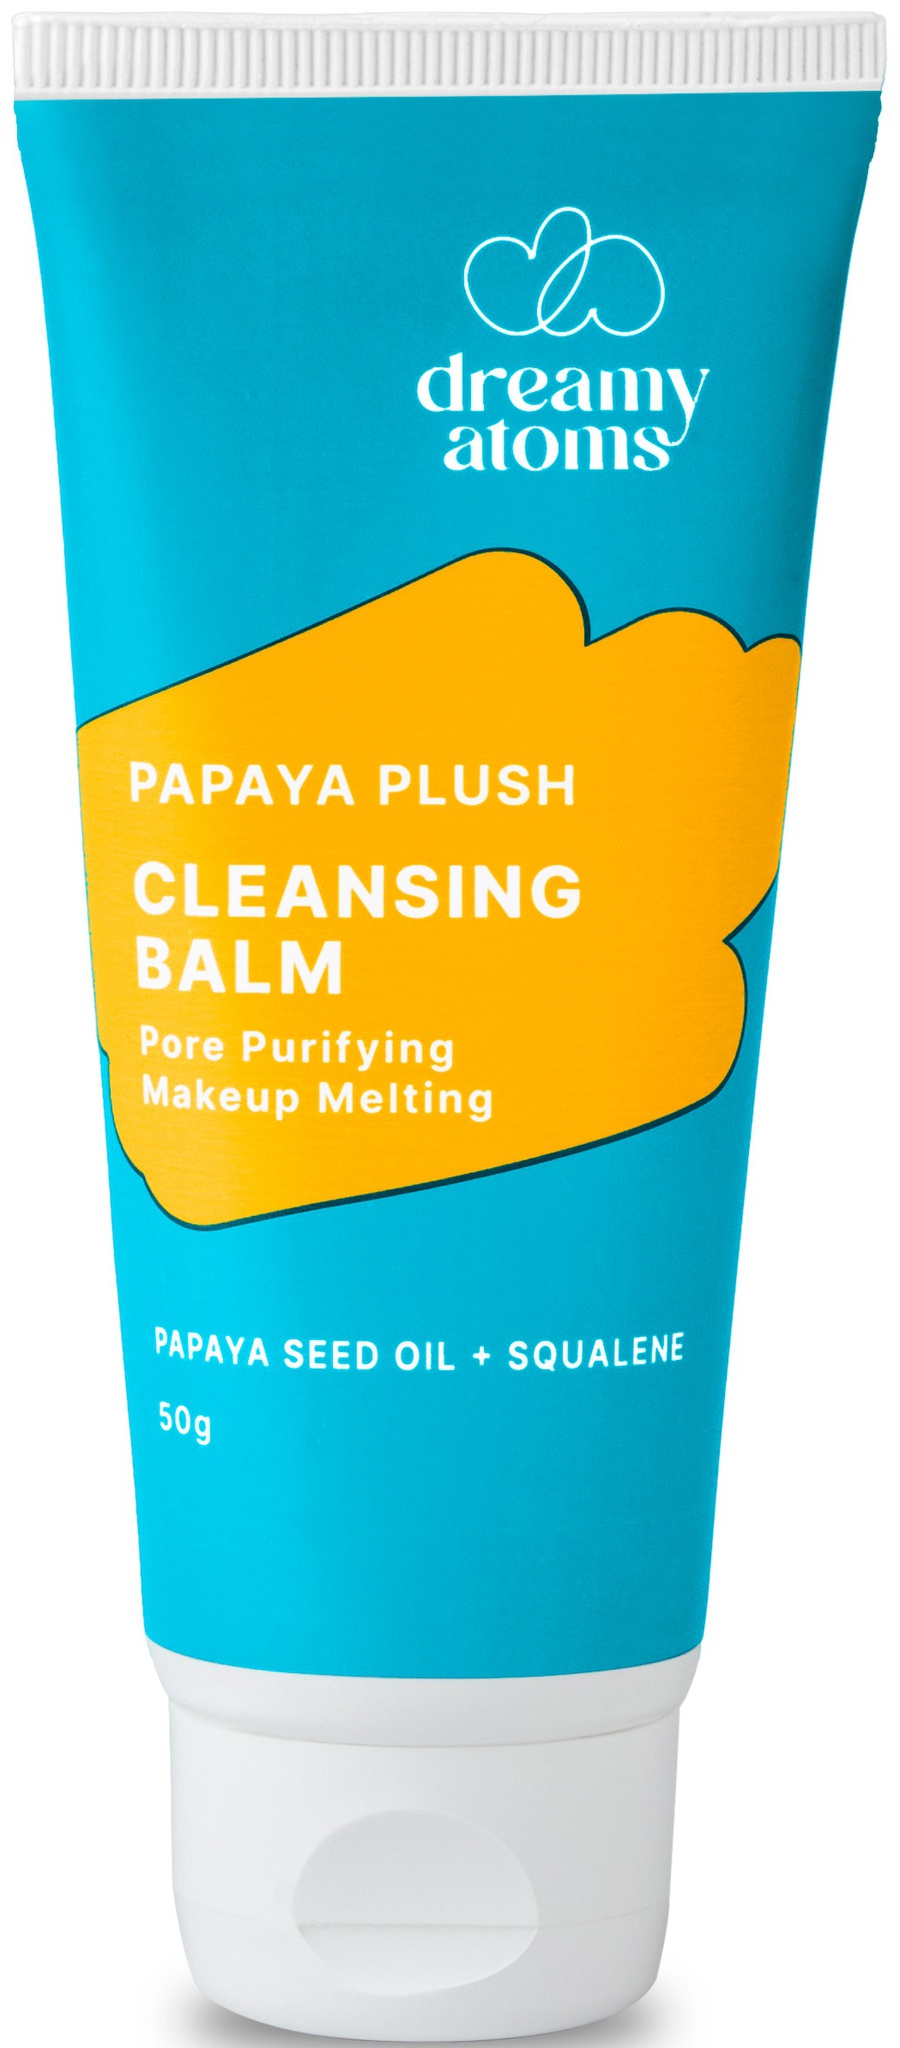 Dreamy Atoms Papaya Plush Cleansing Balm